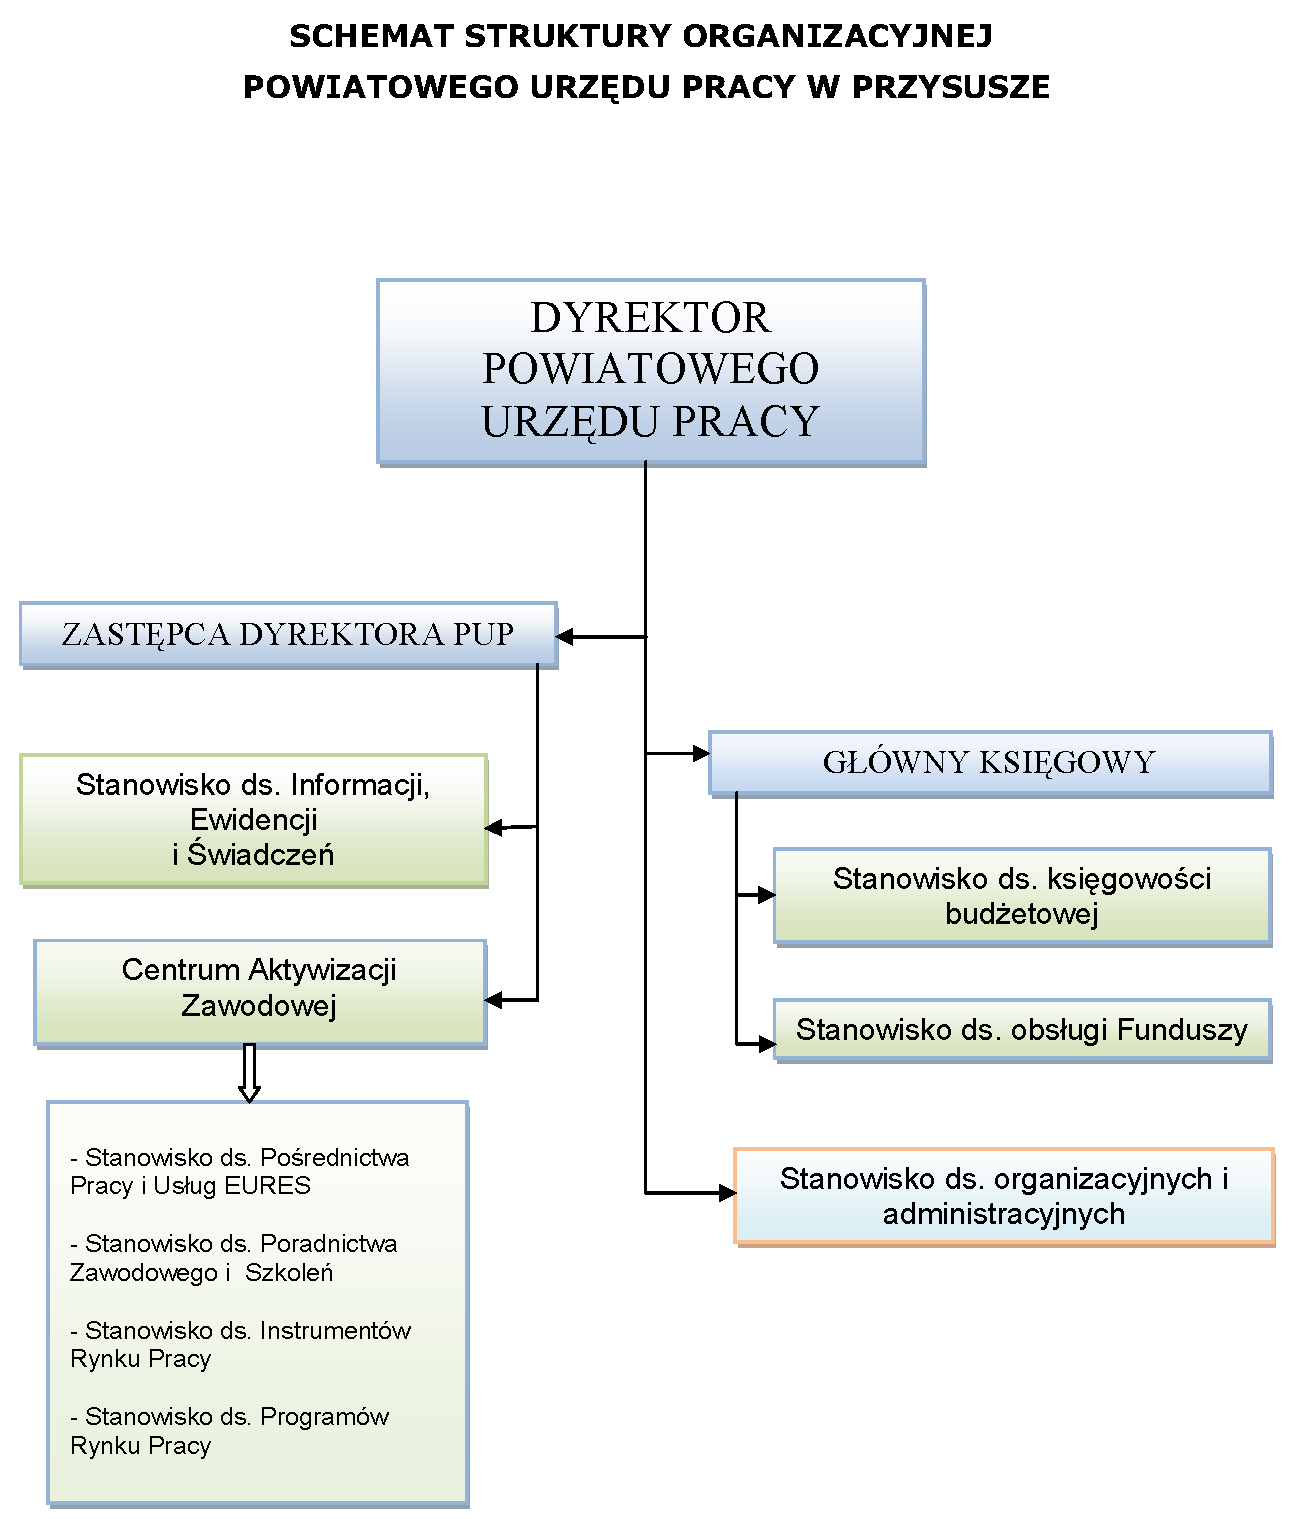 Schemat struktury organizacyjnej Powiatowego Urzędu Pracy w Przysusze